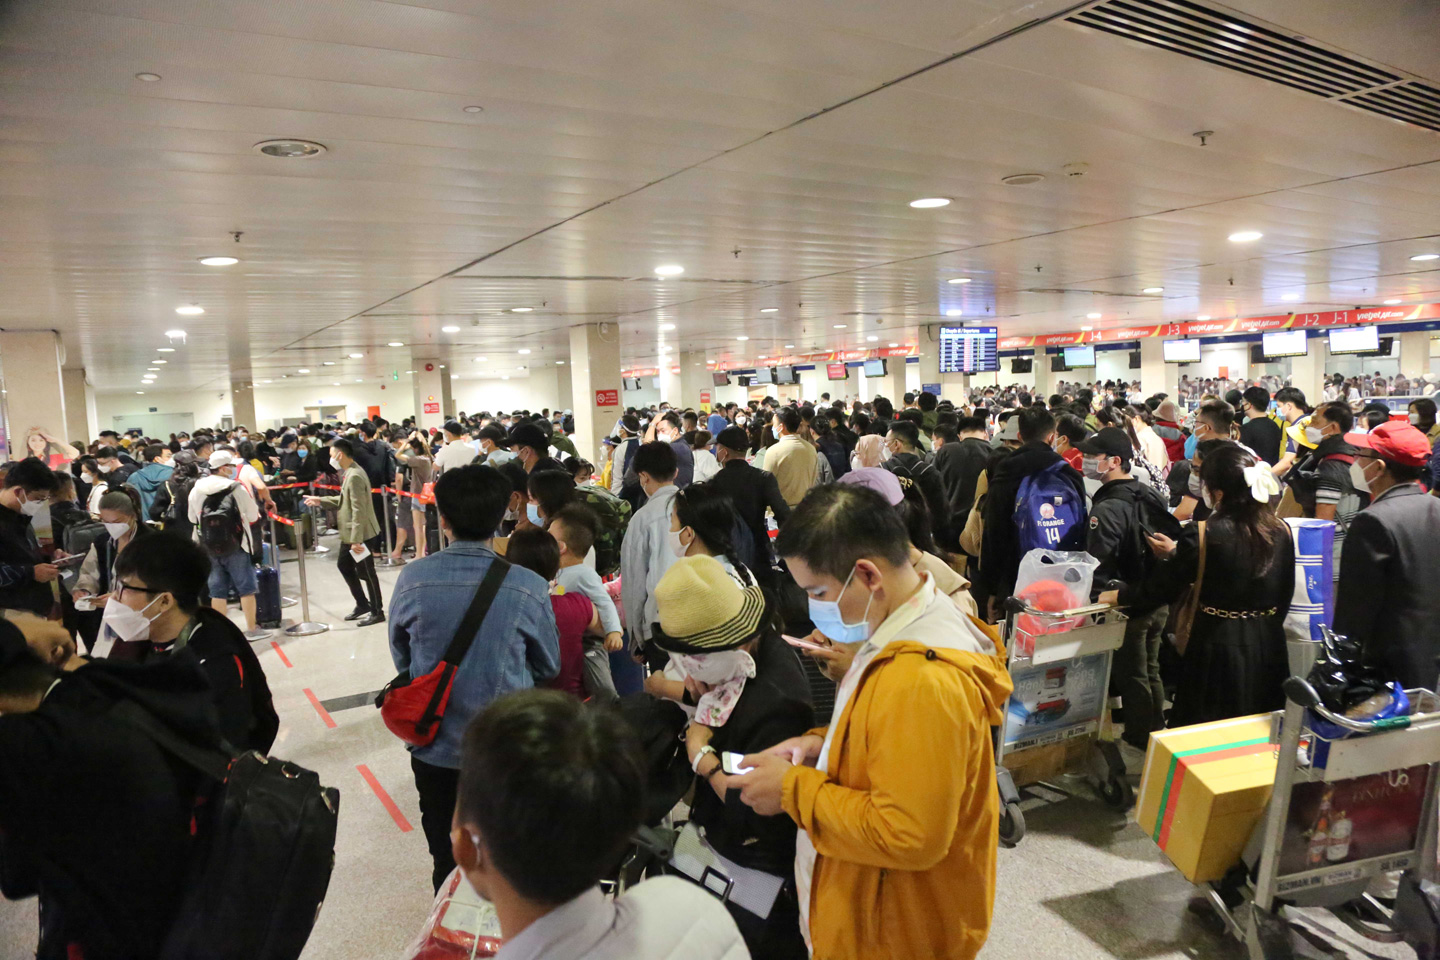 Ảnh: Sân bay Tân Sơn Nhất nghẹt người, khách nằm dài giữa nhà ga cả đêm chờ chuyến bay - 2